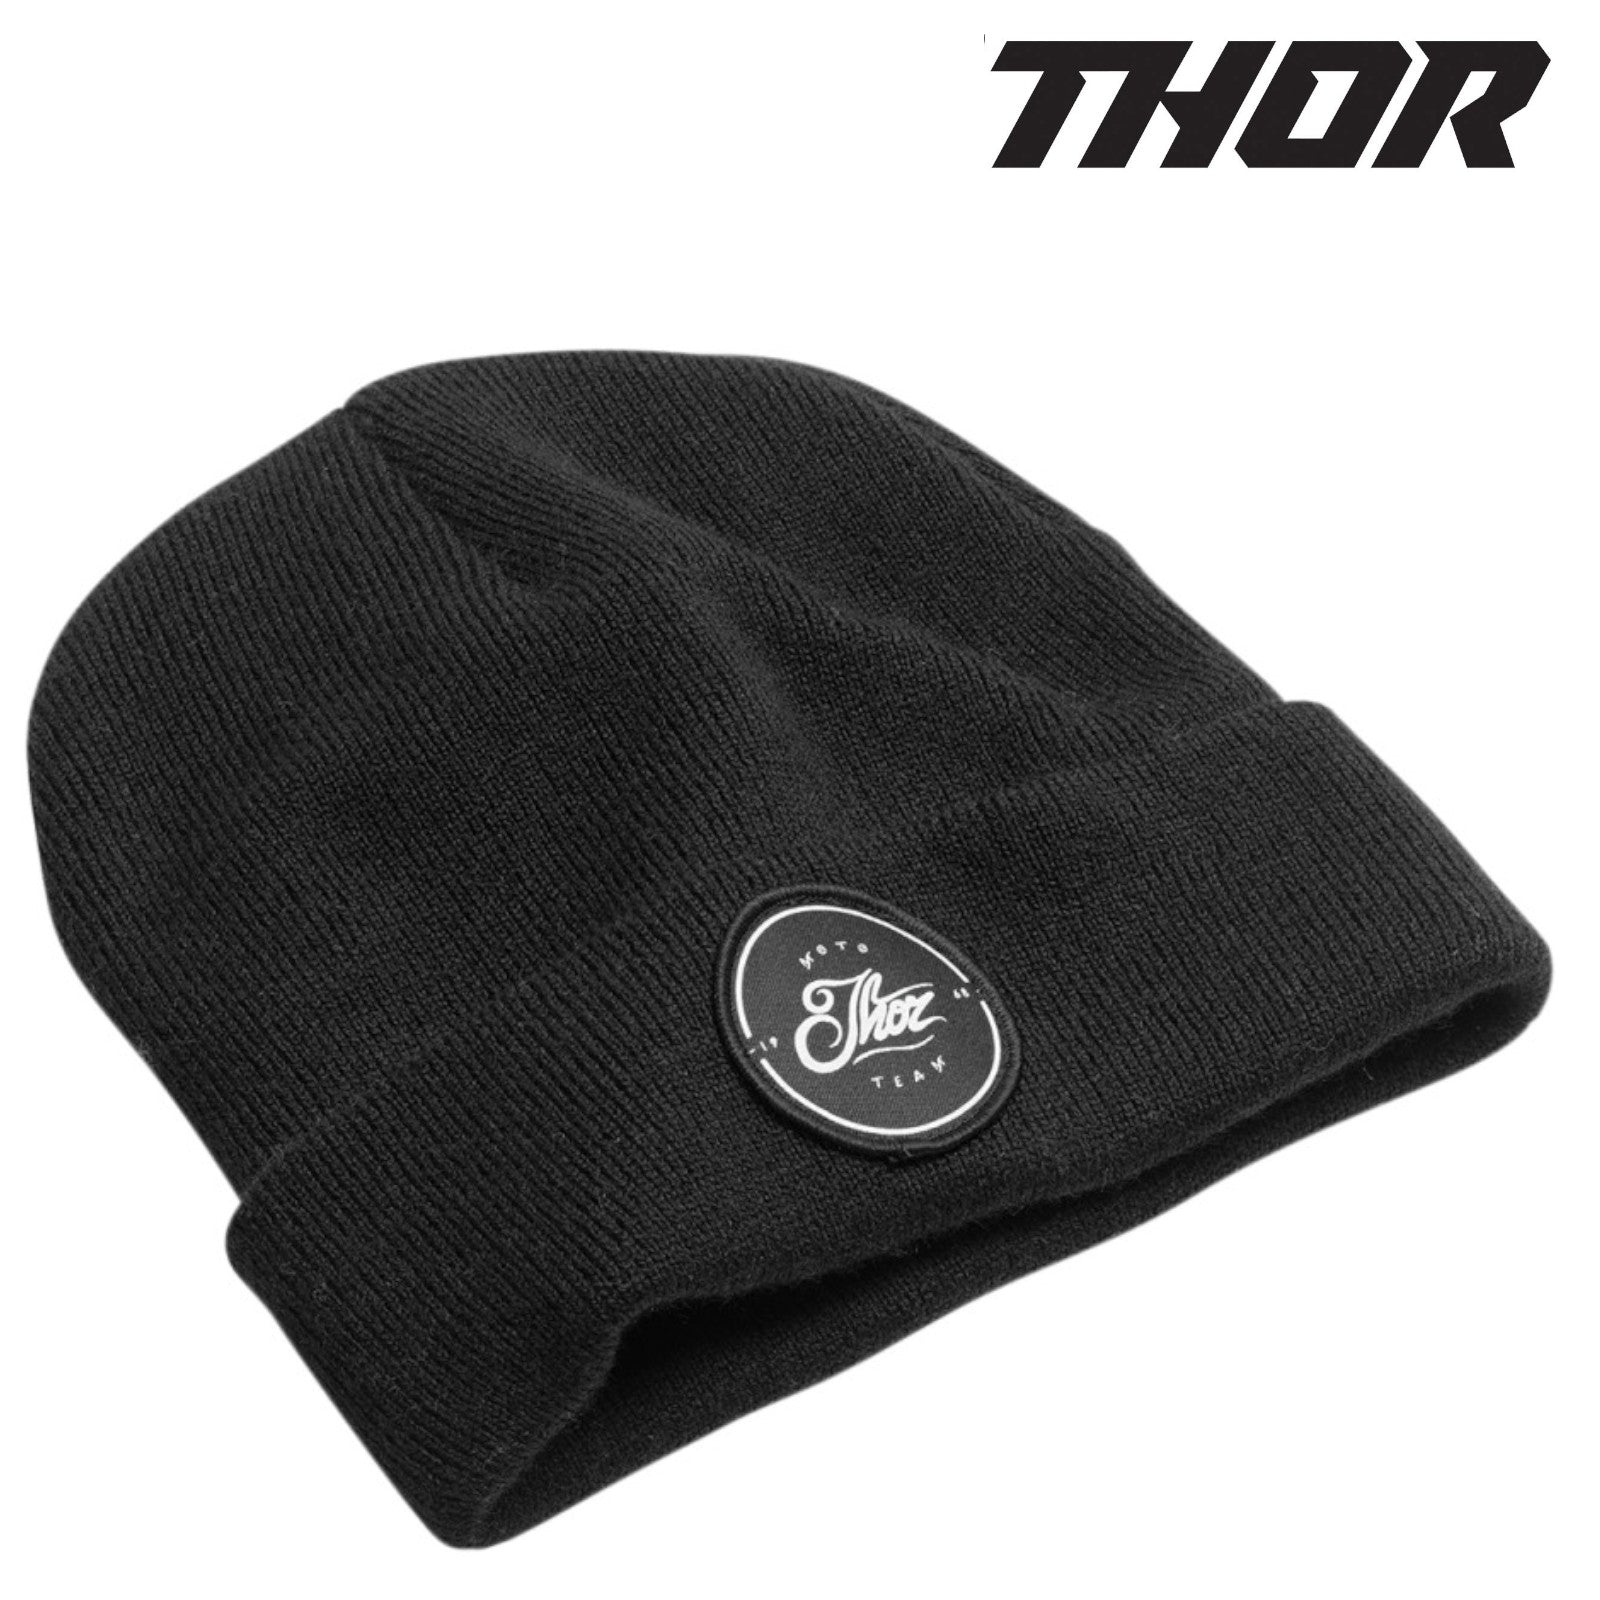 Thor Runner Black Beanie Hat Alternate 2